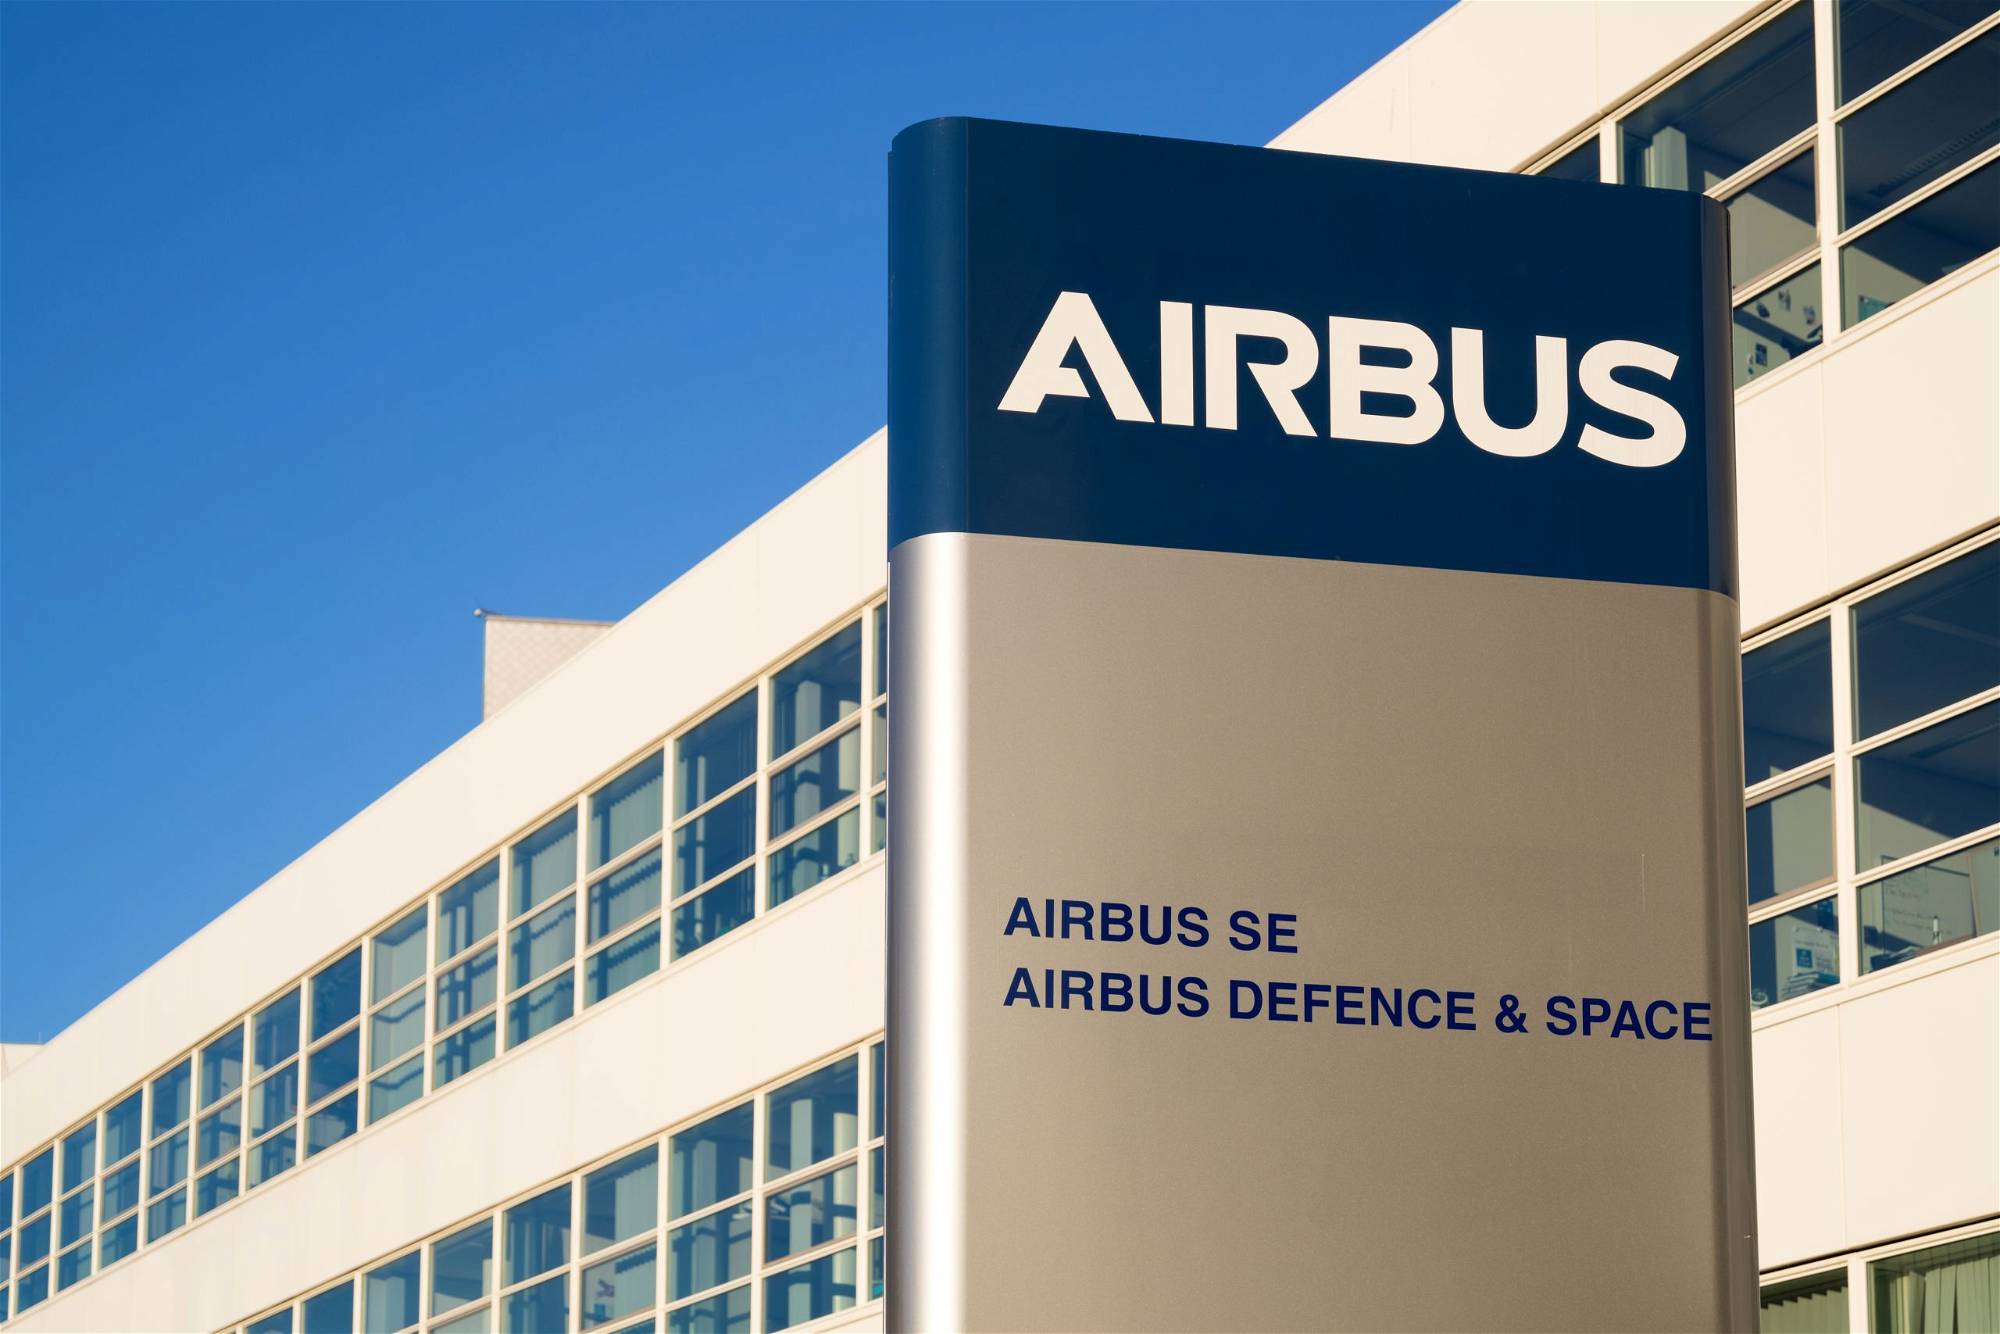 Airbus-Aktie-Sollten-Sie-jetzt-kaufen